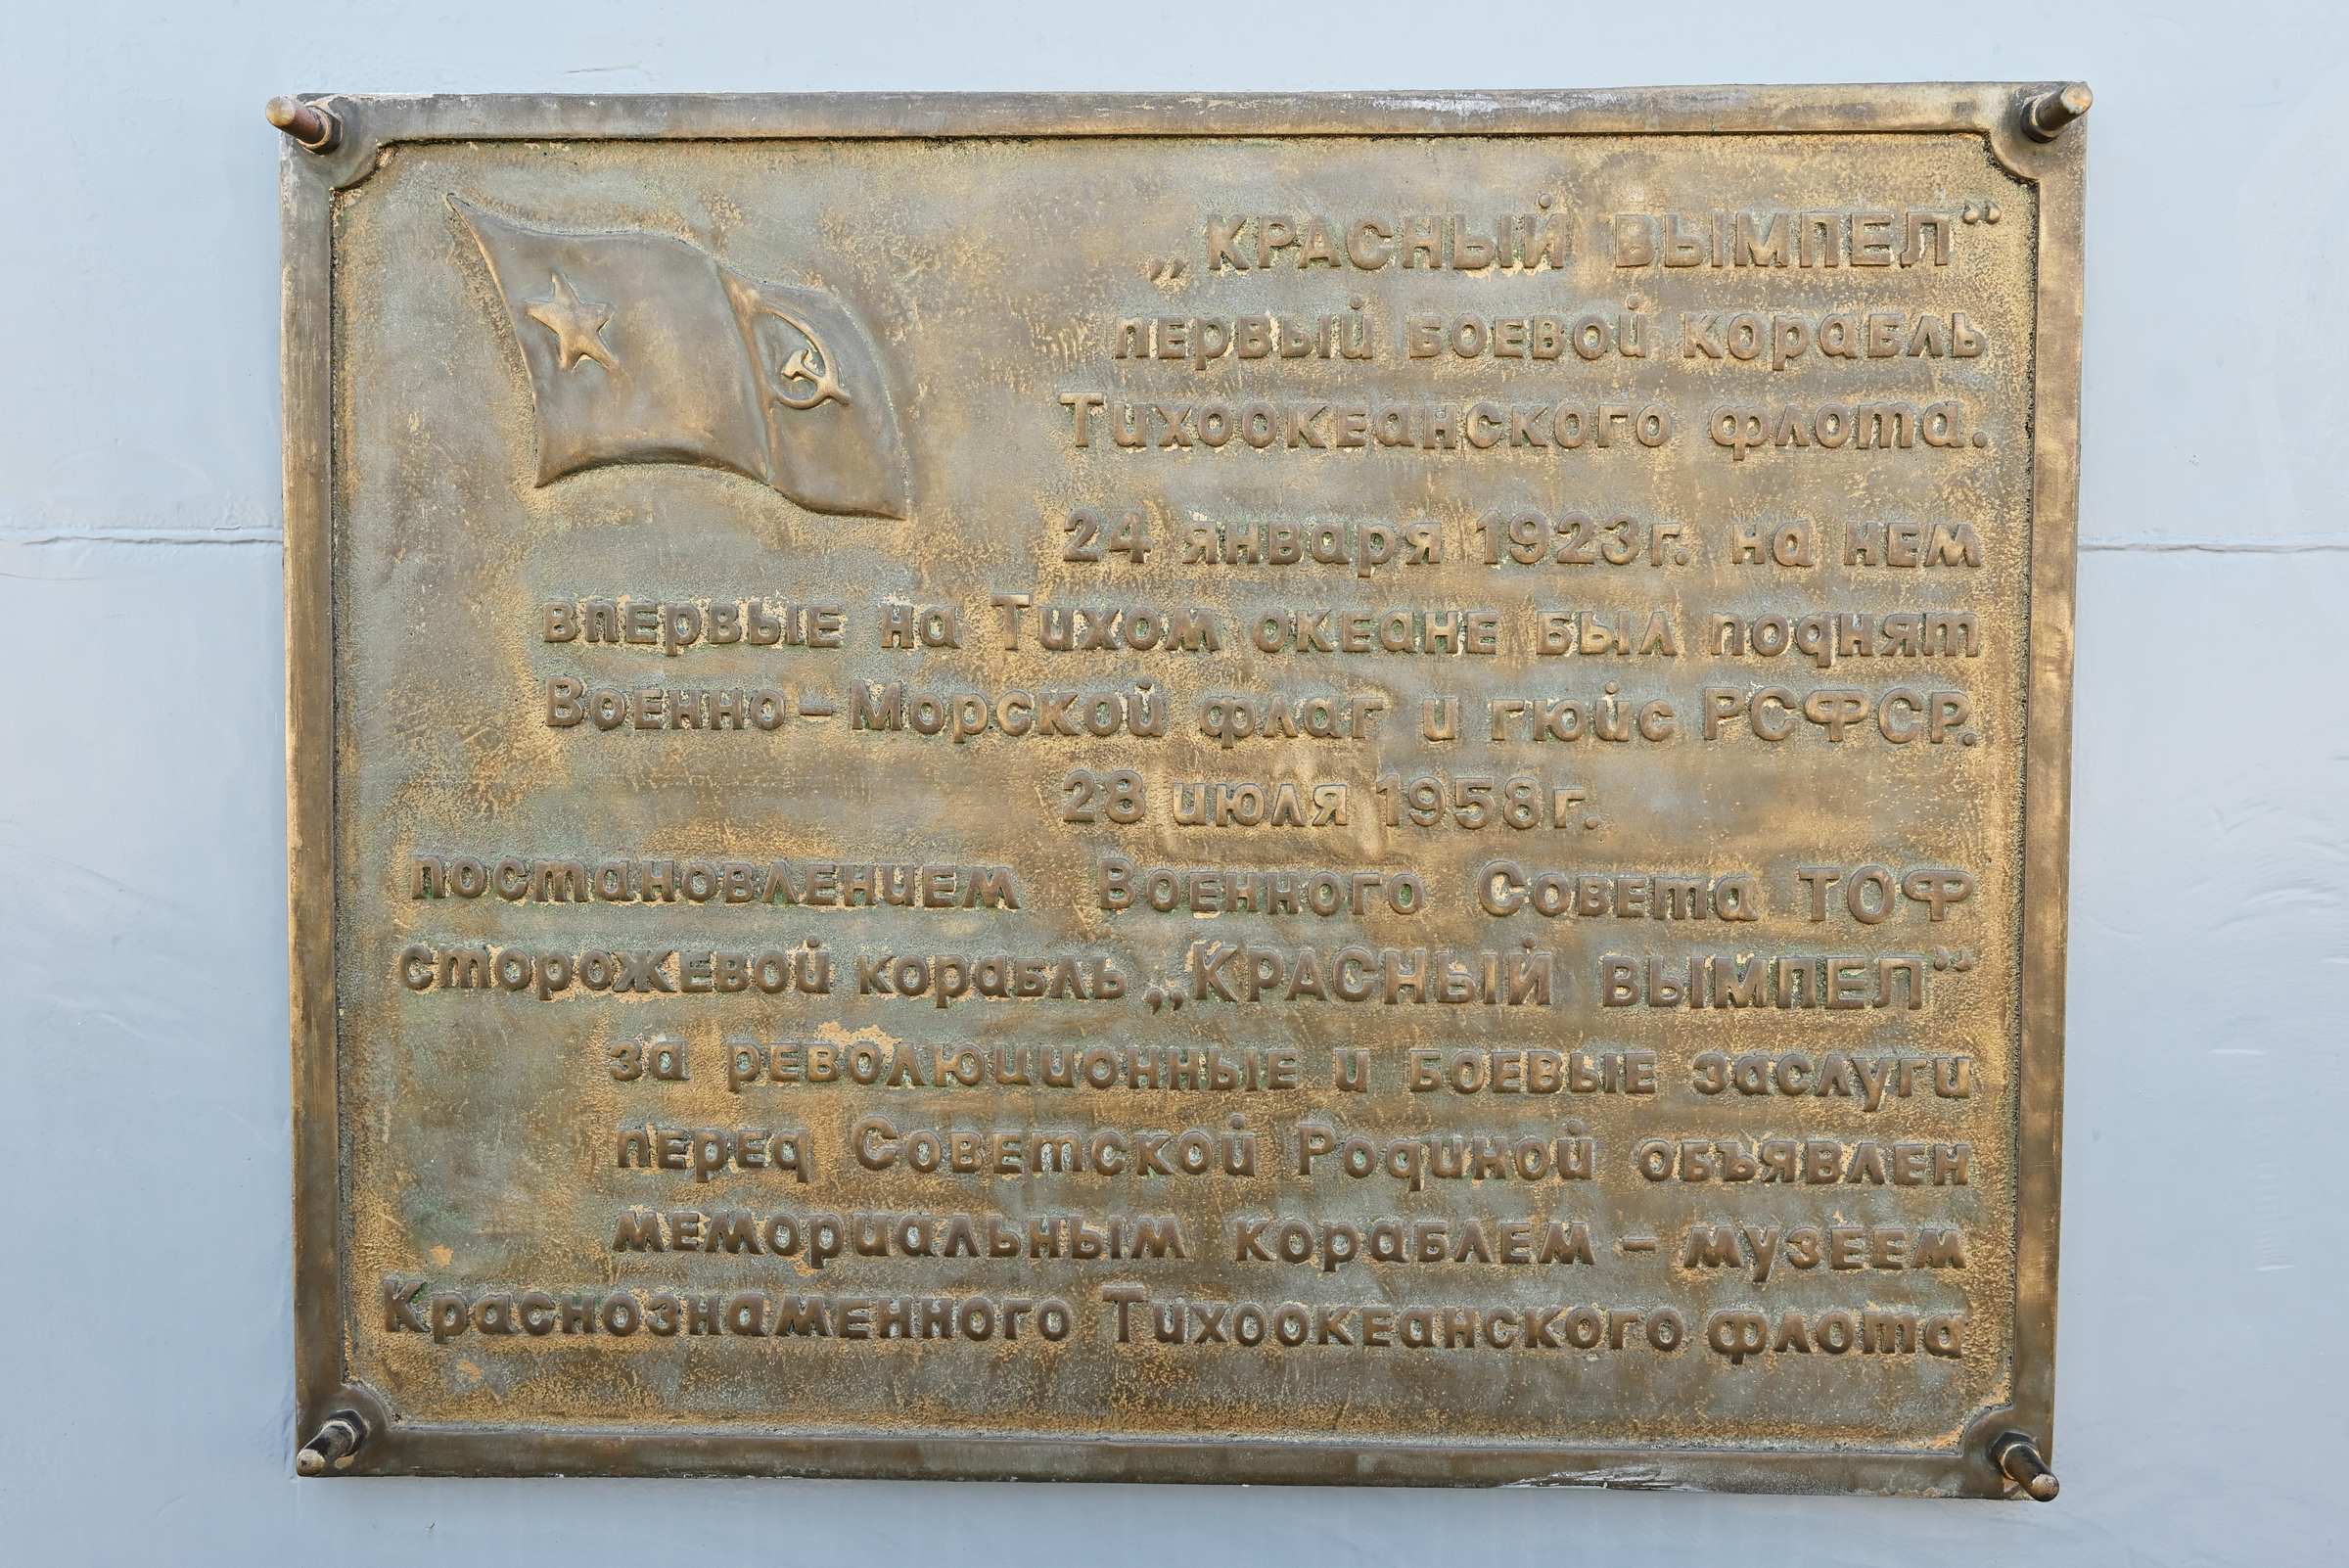 Мемориальная табличка на Корабельной набережной у Мемориального корабля «Красный вымпел»